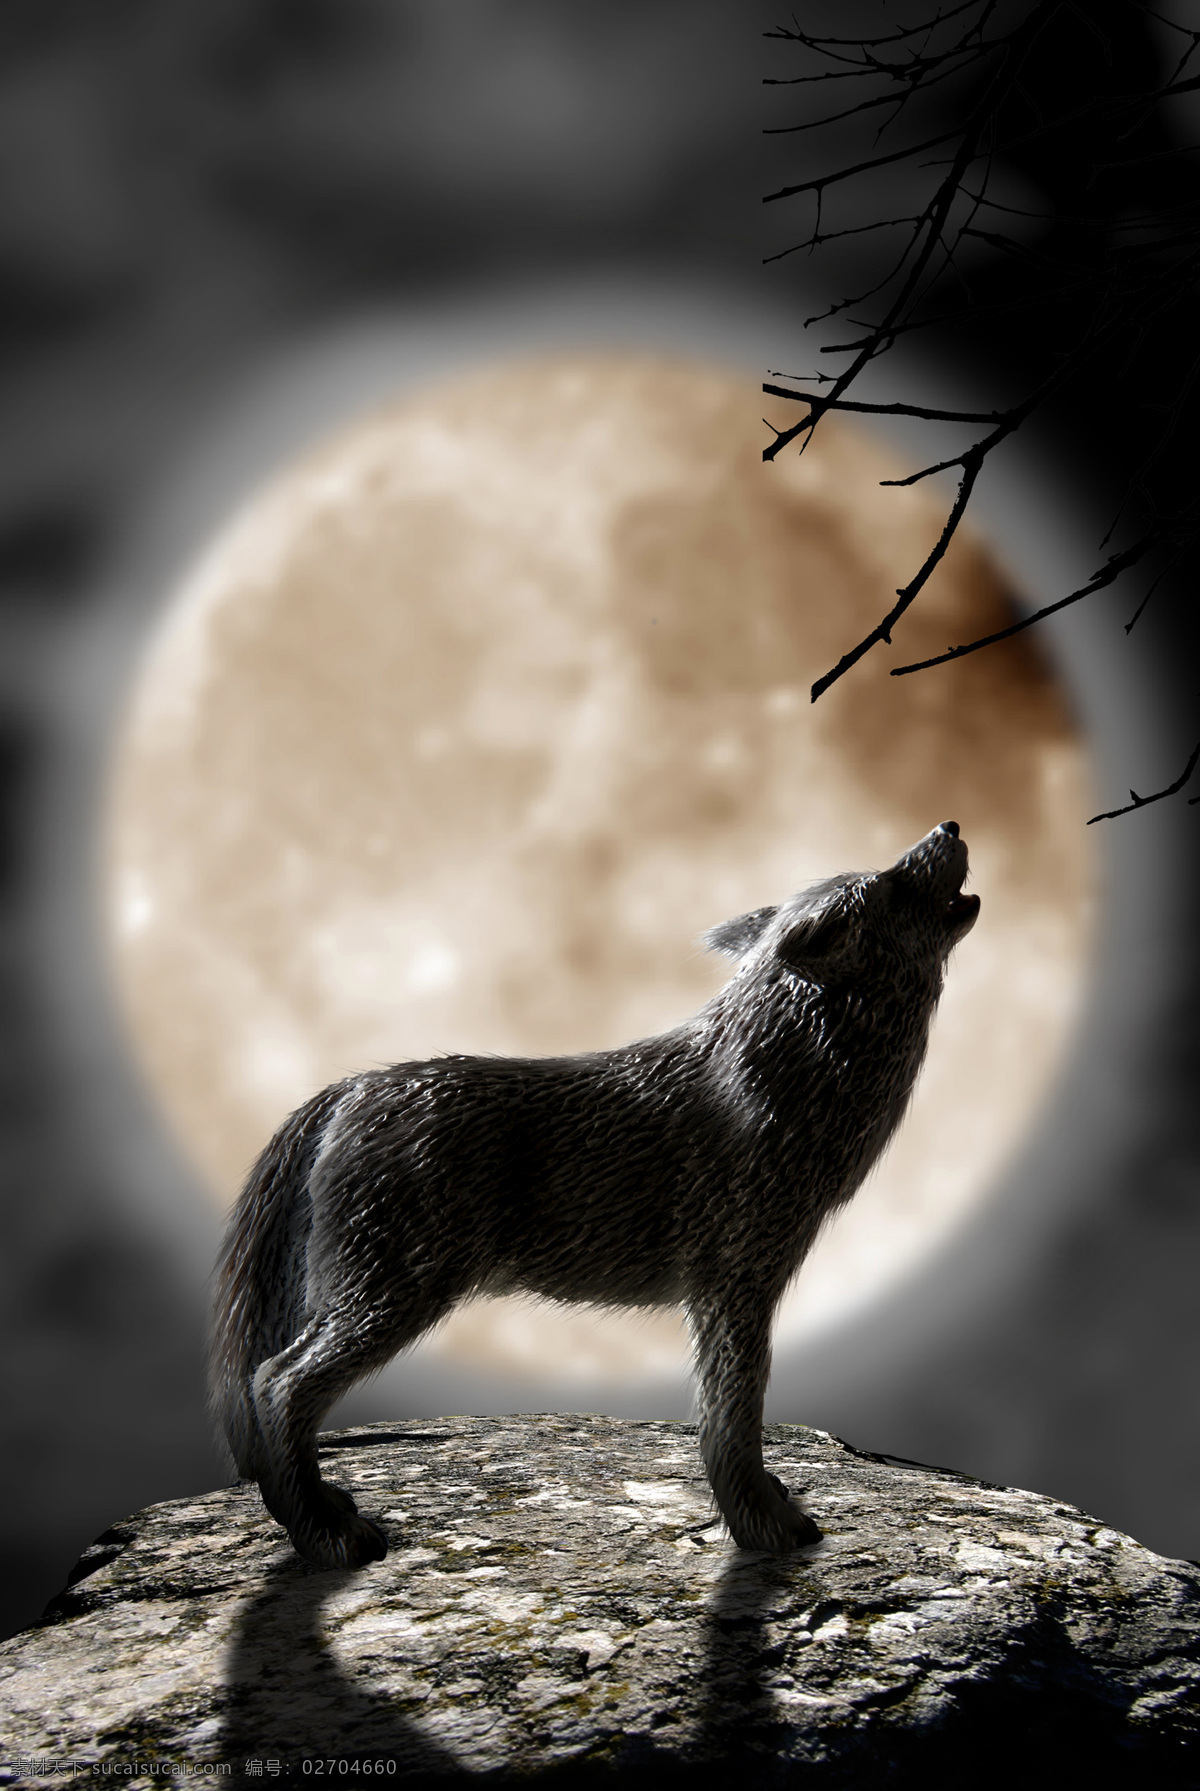 夜晚 仰天长啸 狼 皎洁 月亮 圆月 月光 狼人 狼叫 狼嚎 星空 树枝 森林 森林之王 场景设计 景观设计 环境设计